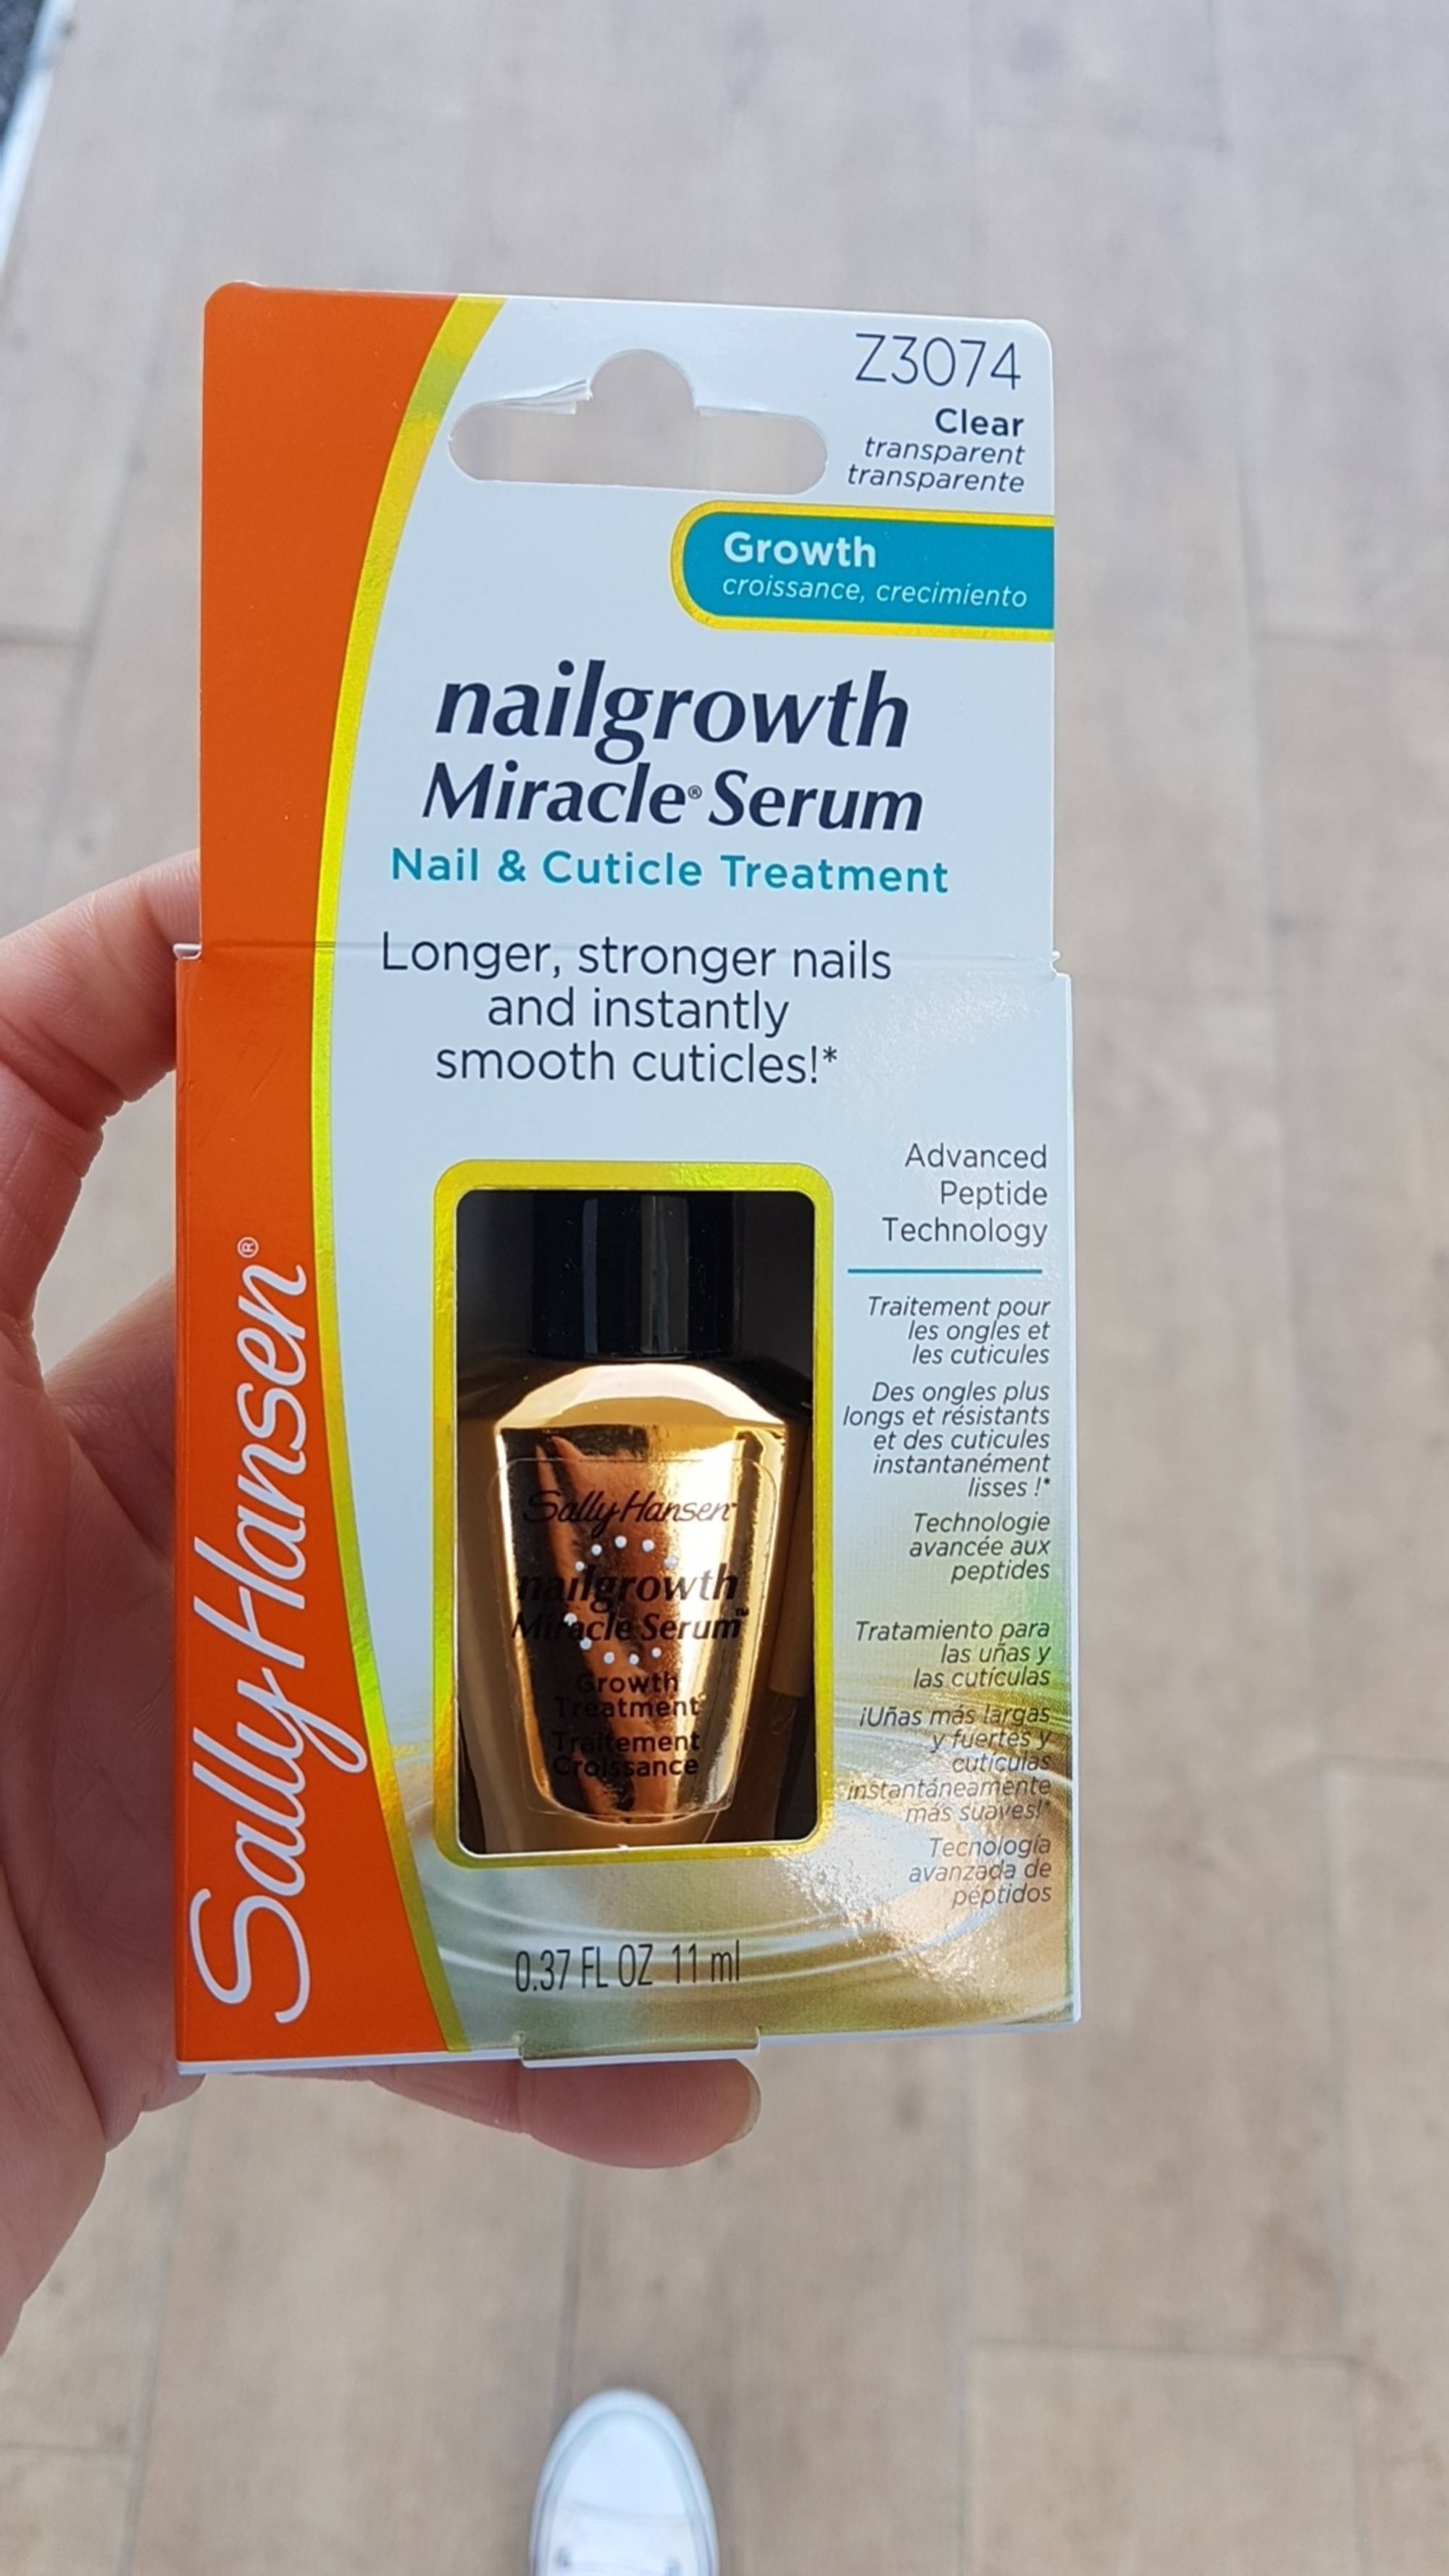 SALLY HANSEN - Nailgrowth miracle serum - Nail & Cuticle treatment